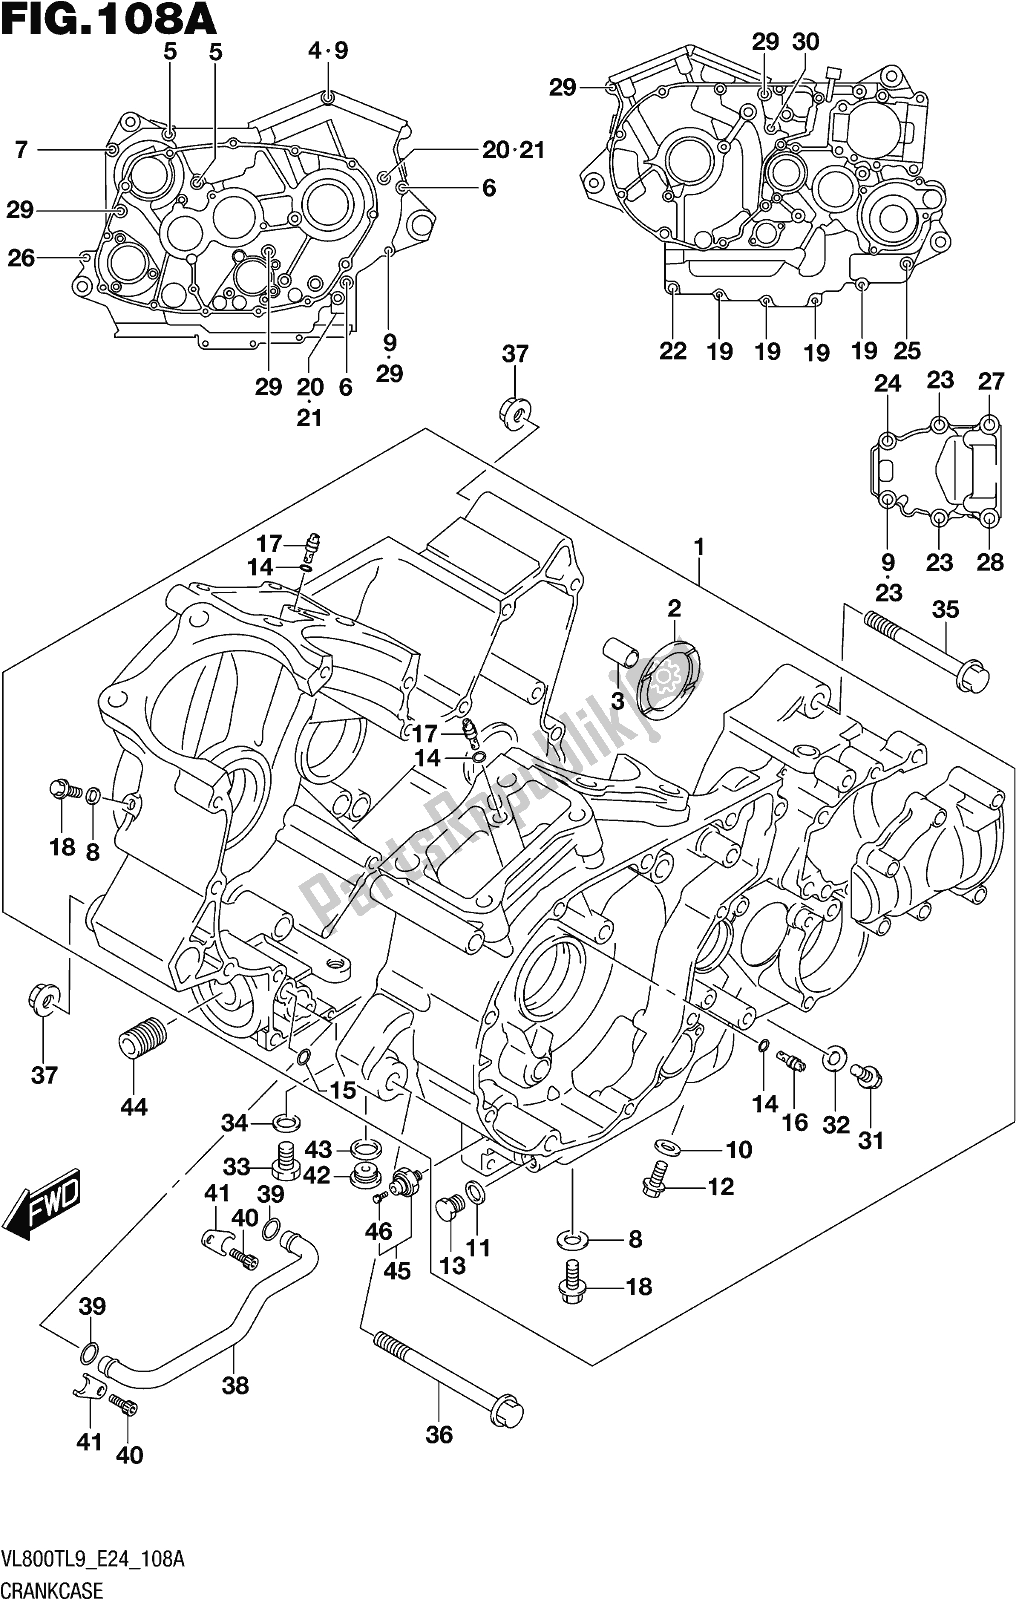 Alle onderdelen voor de Fig. 108a Crankcase van de Suzuki VL 800T 2019